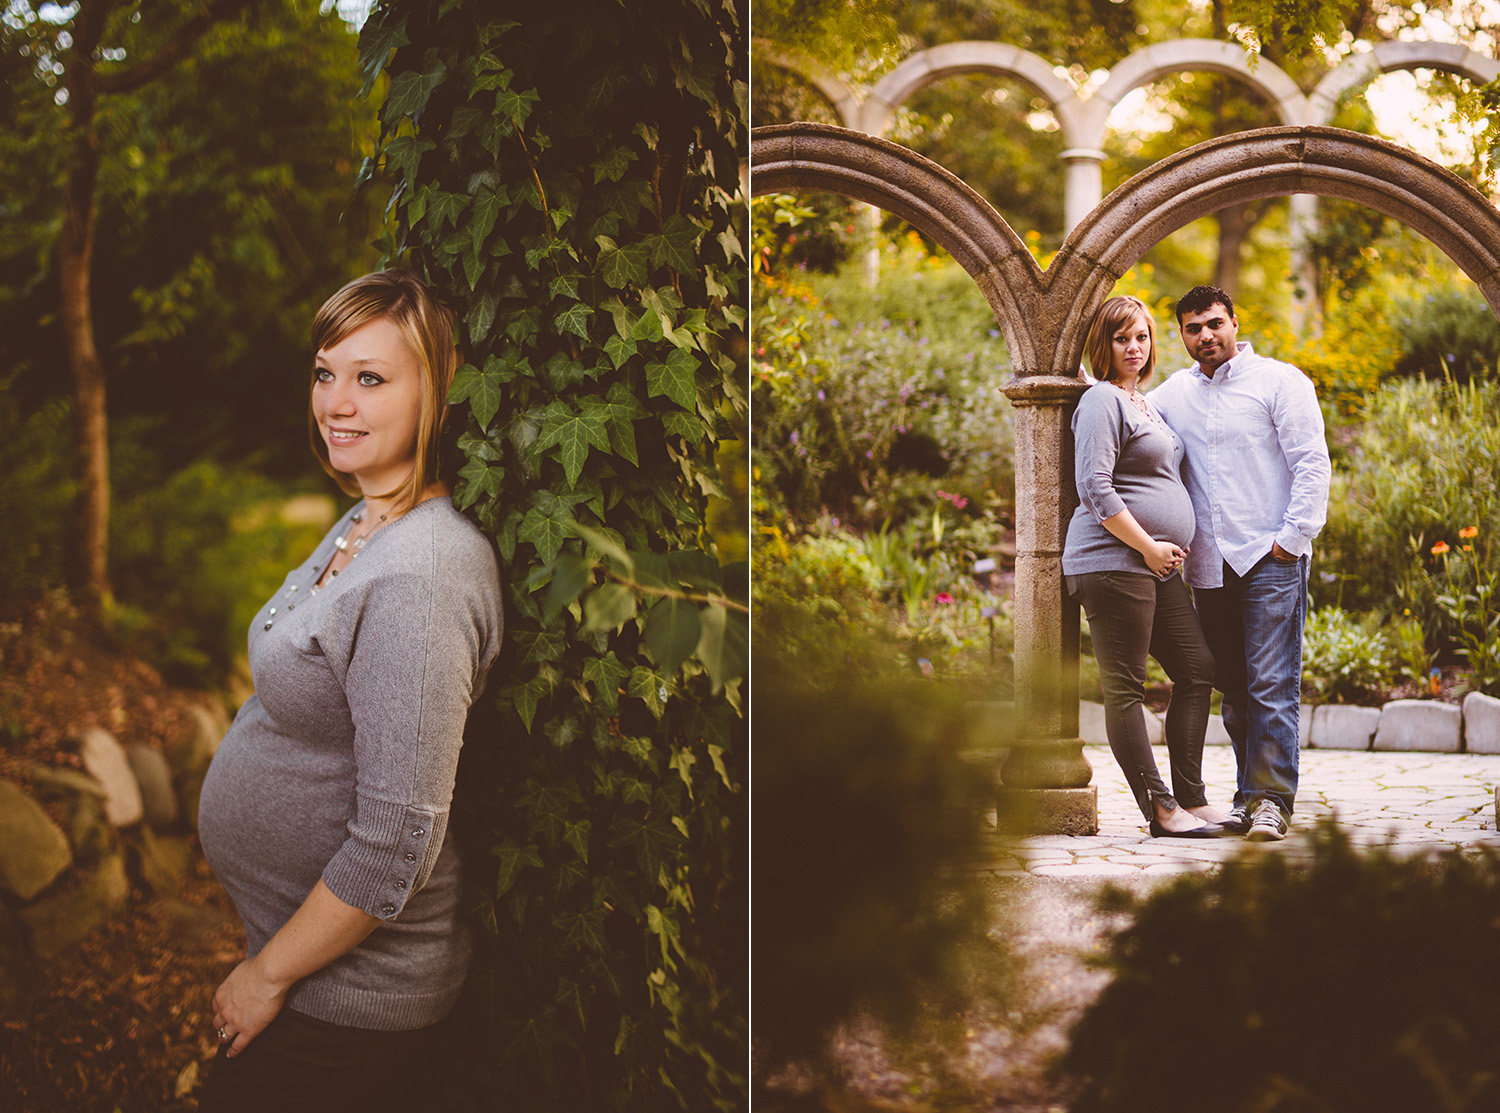 Cleveland Maternity Photographer Nikki and Tony Image03.jpg